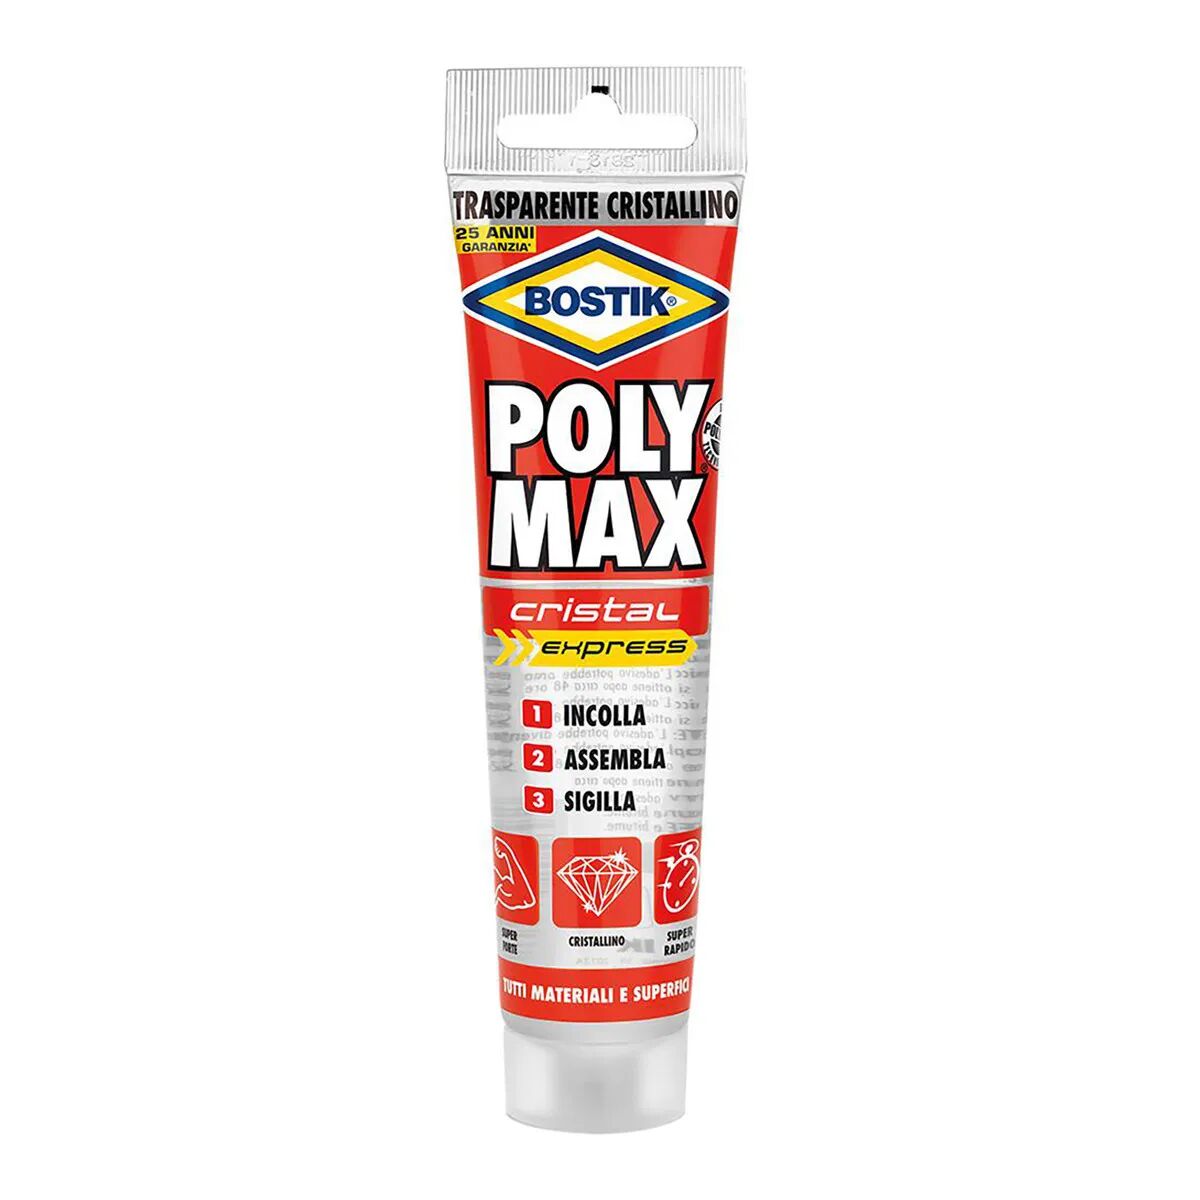 POLYMAX Adesivo Sigillante Poly Max Bostik 115 G Cristal Express Trasparente Sigilla Tutti I Materiali